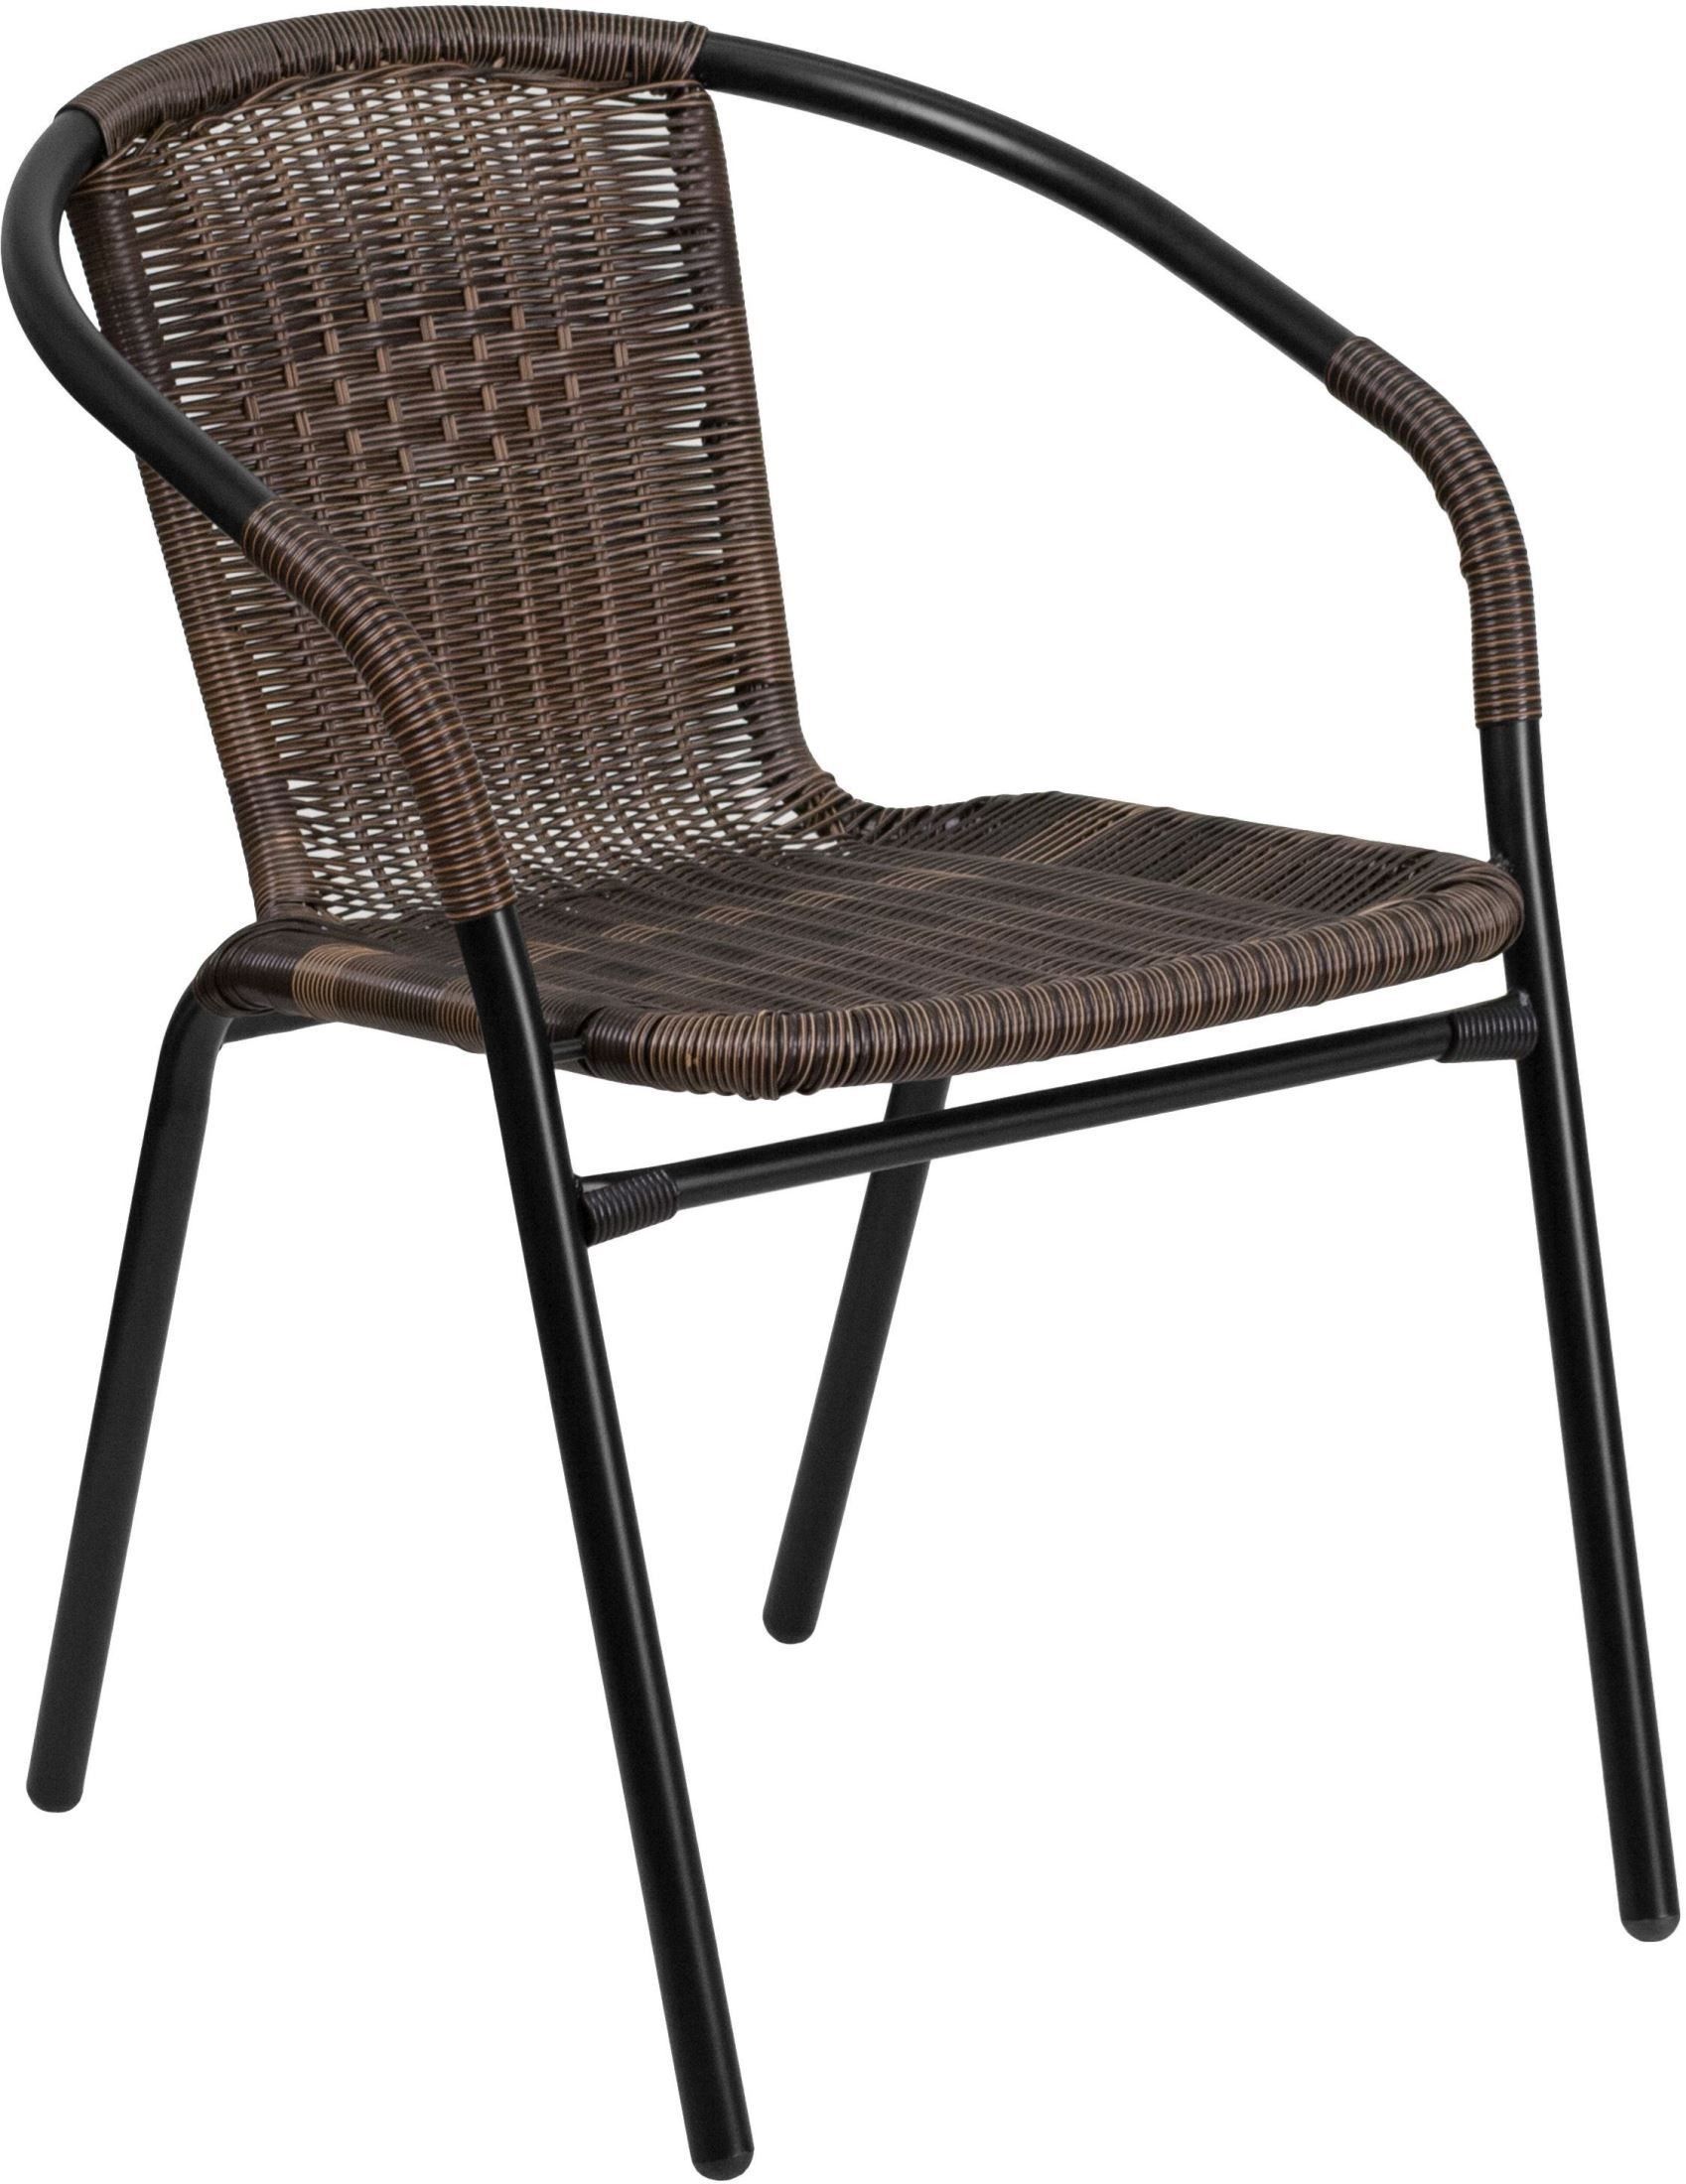 Dark Brown Rattan Indoor Outdoor Restaurant Stack Chair From Renegade Regarding Dark Brown Wood Outdoor Chairs (View 13 of 15)